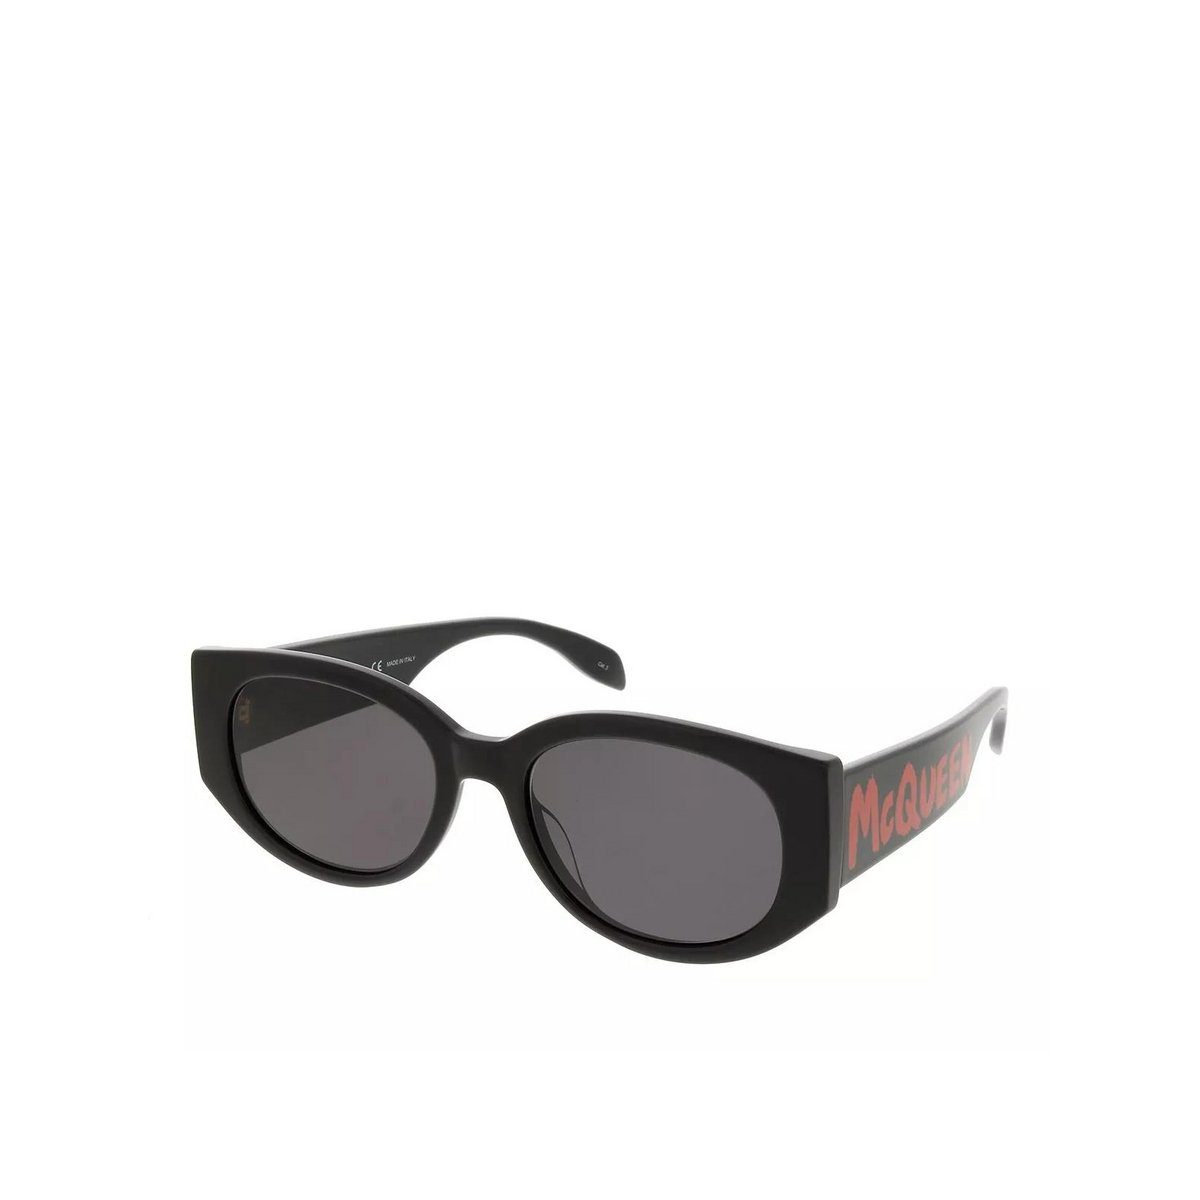 ALEXANDER schwarz Sonnenbrille (1-St) MCQUEEN